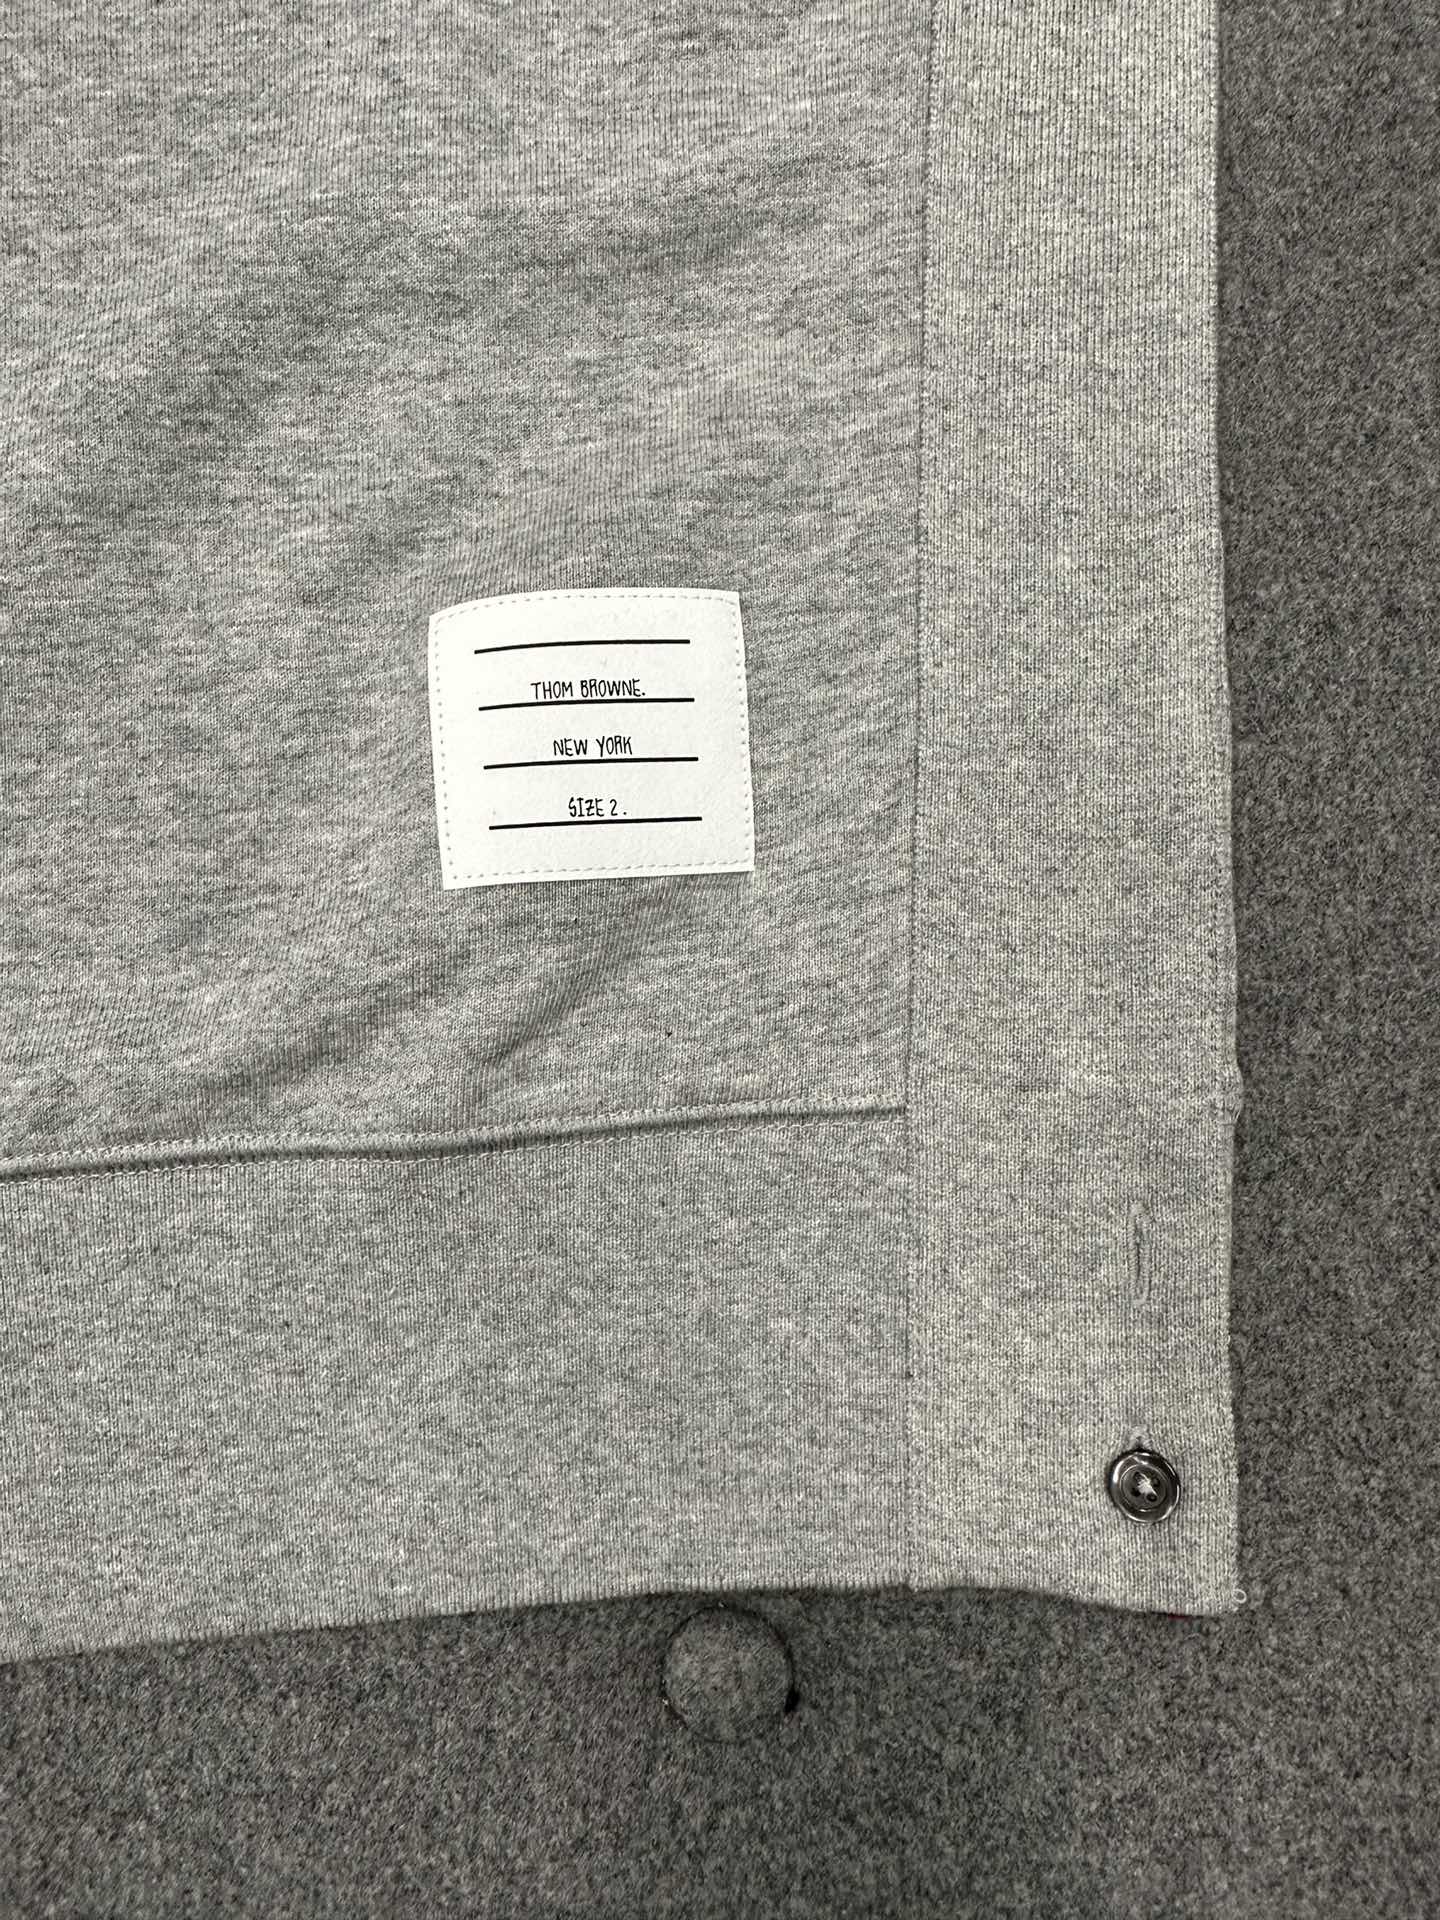 TJ / 톰브라운 클래식 맨투맨 스웨트 셔츠